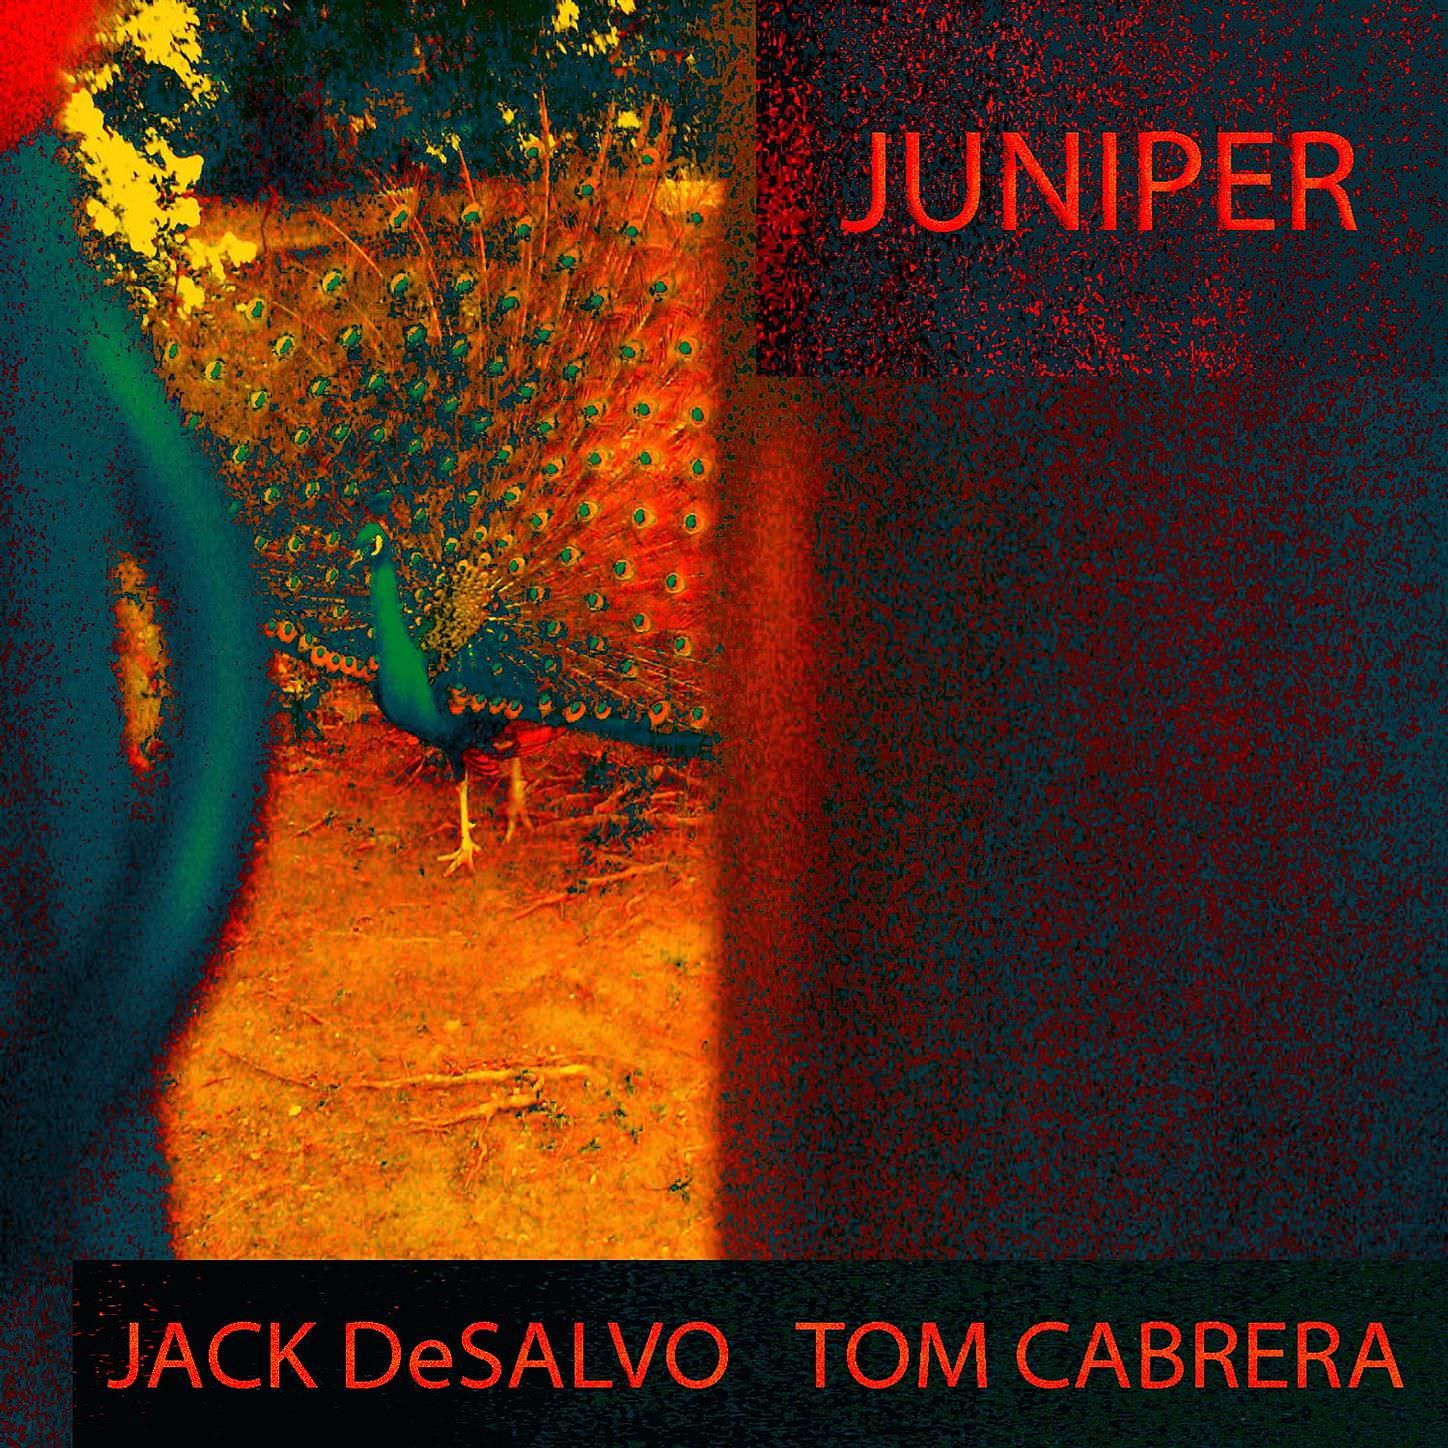 Jack DeSalvo & Tom Cabrera - Juniper (2014/2018) [Qobuz FLAC 24bit/88,2kHz]